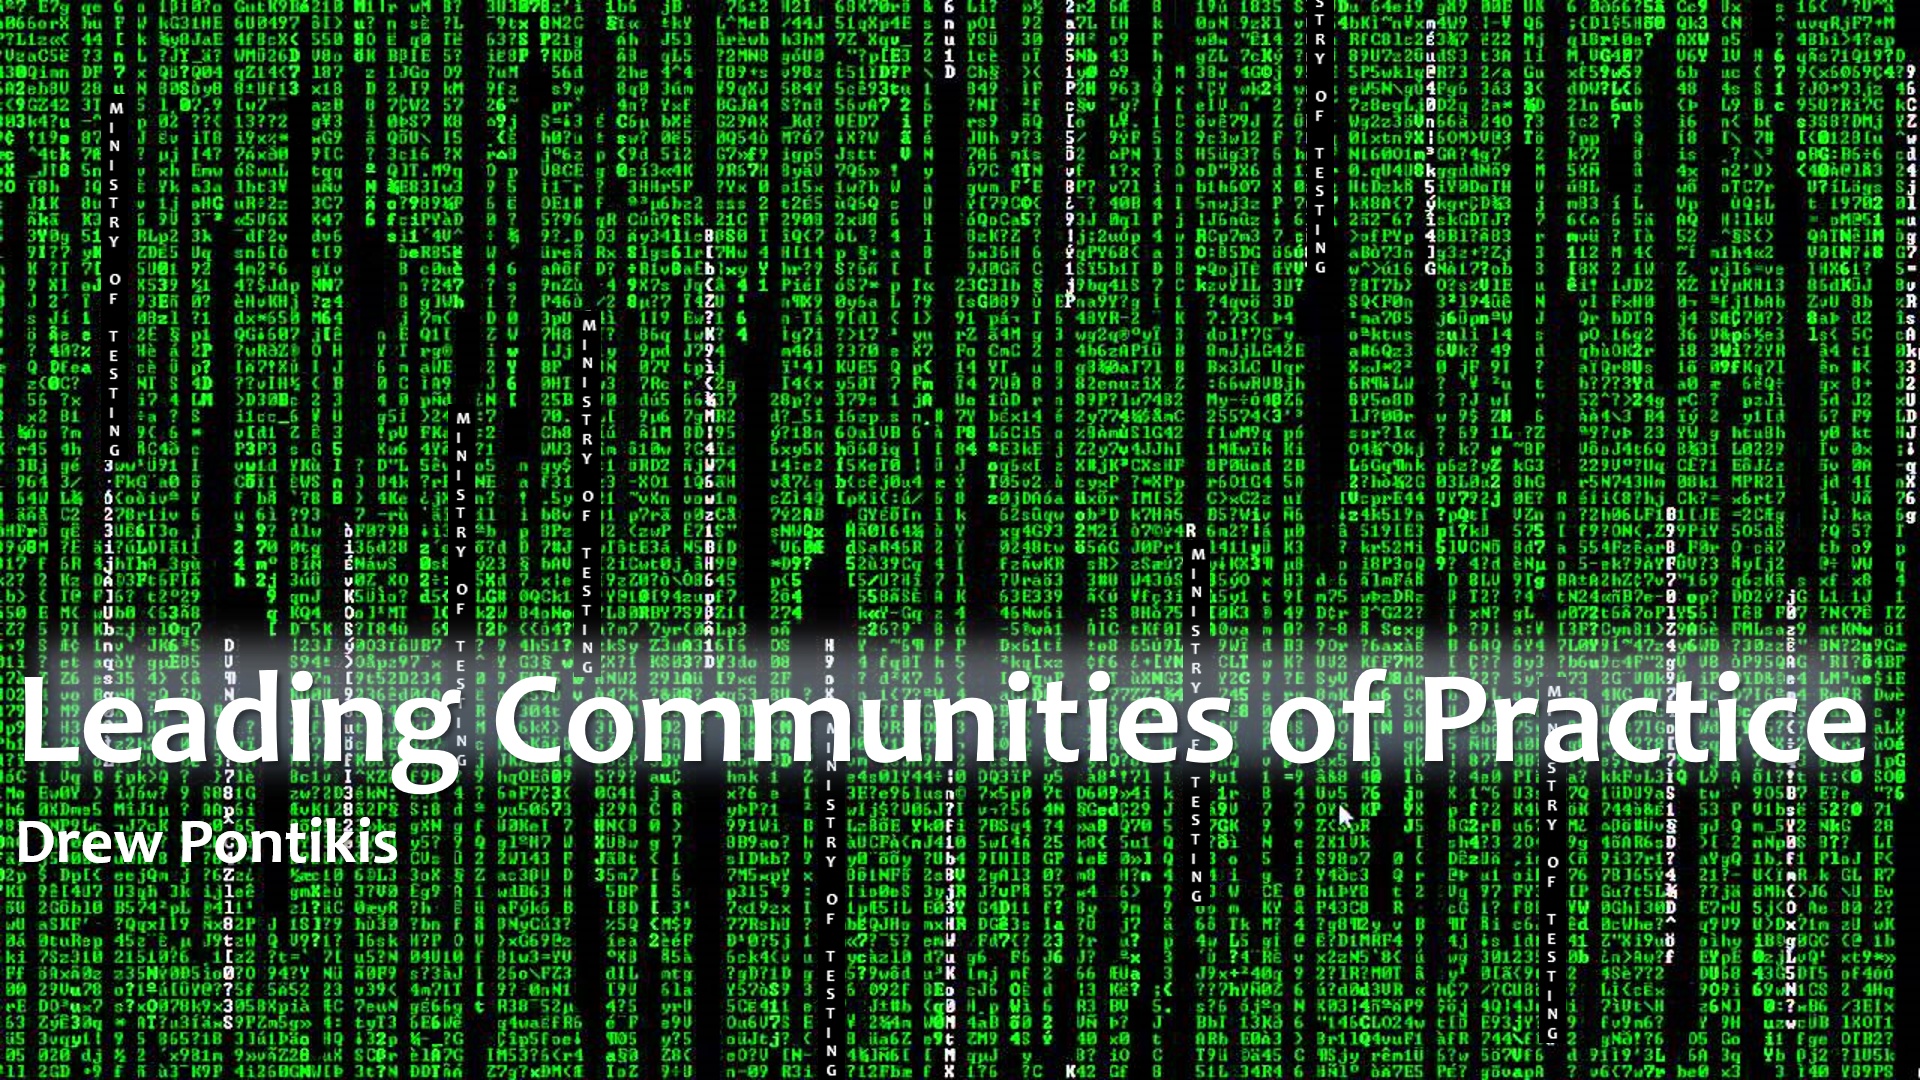 The MoTrix - Leading Communities of Practice with Drew Pontikis